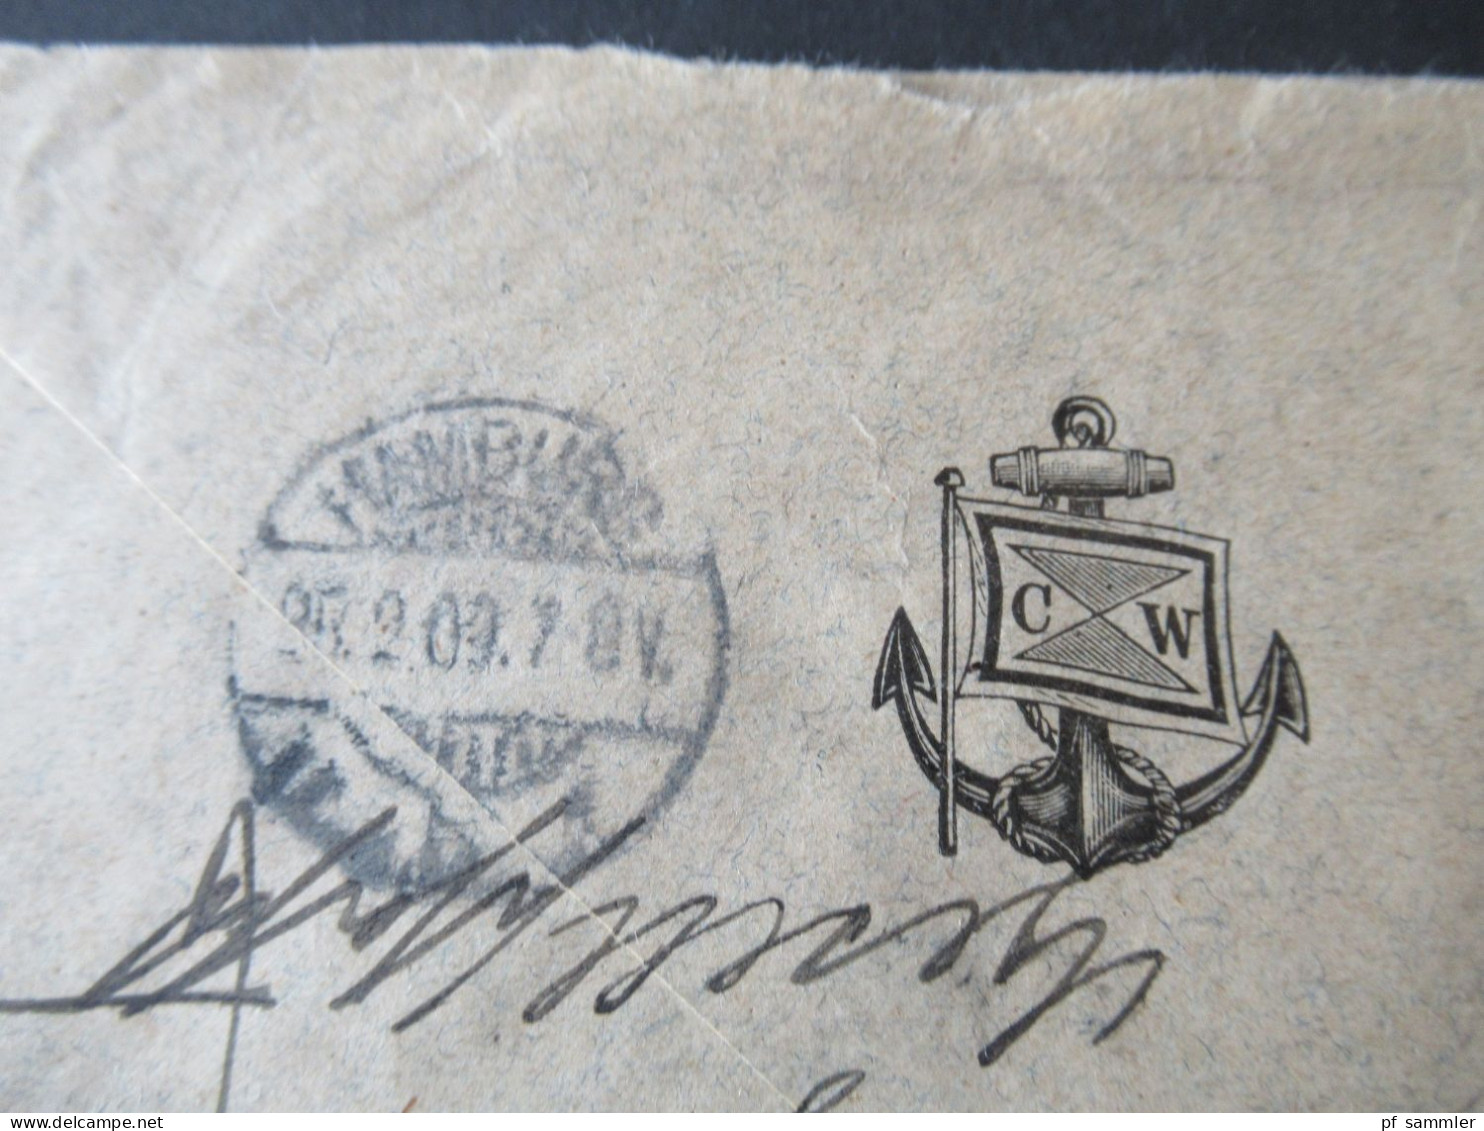 Kolonie Kamerun / DR 1909 Schiffspost Deutsche Seepost Hamburg Westafrika XXXII. Umschlag mit Anker CW / Kanaren Stp.